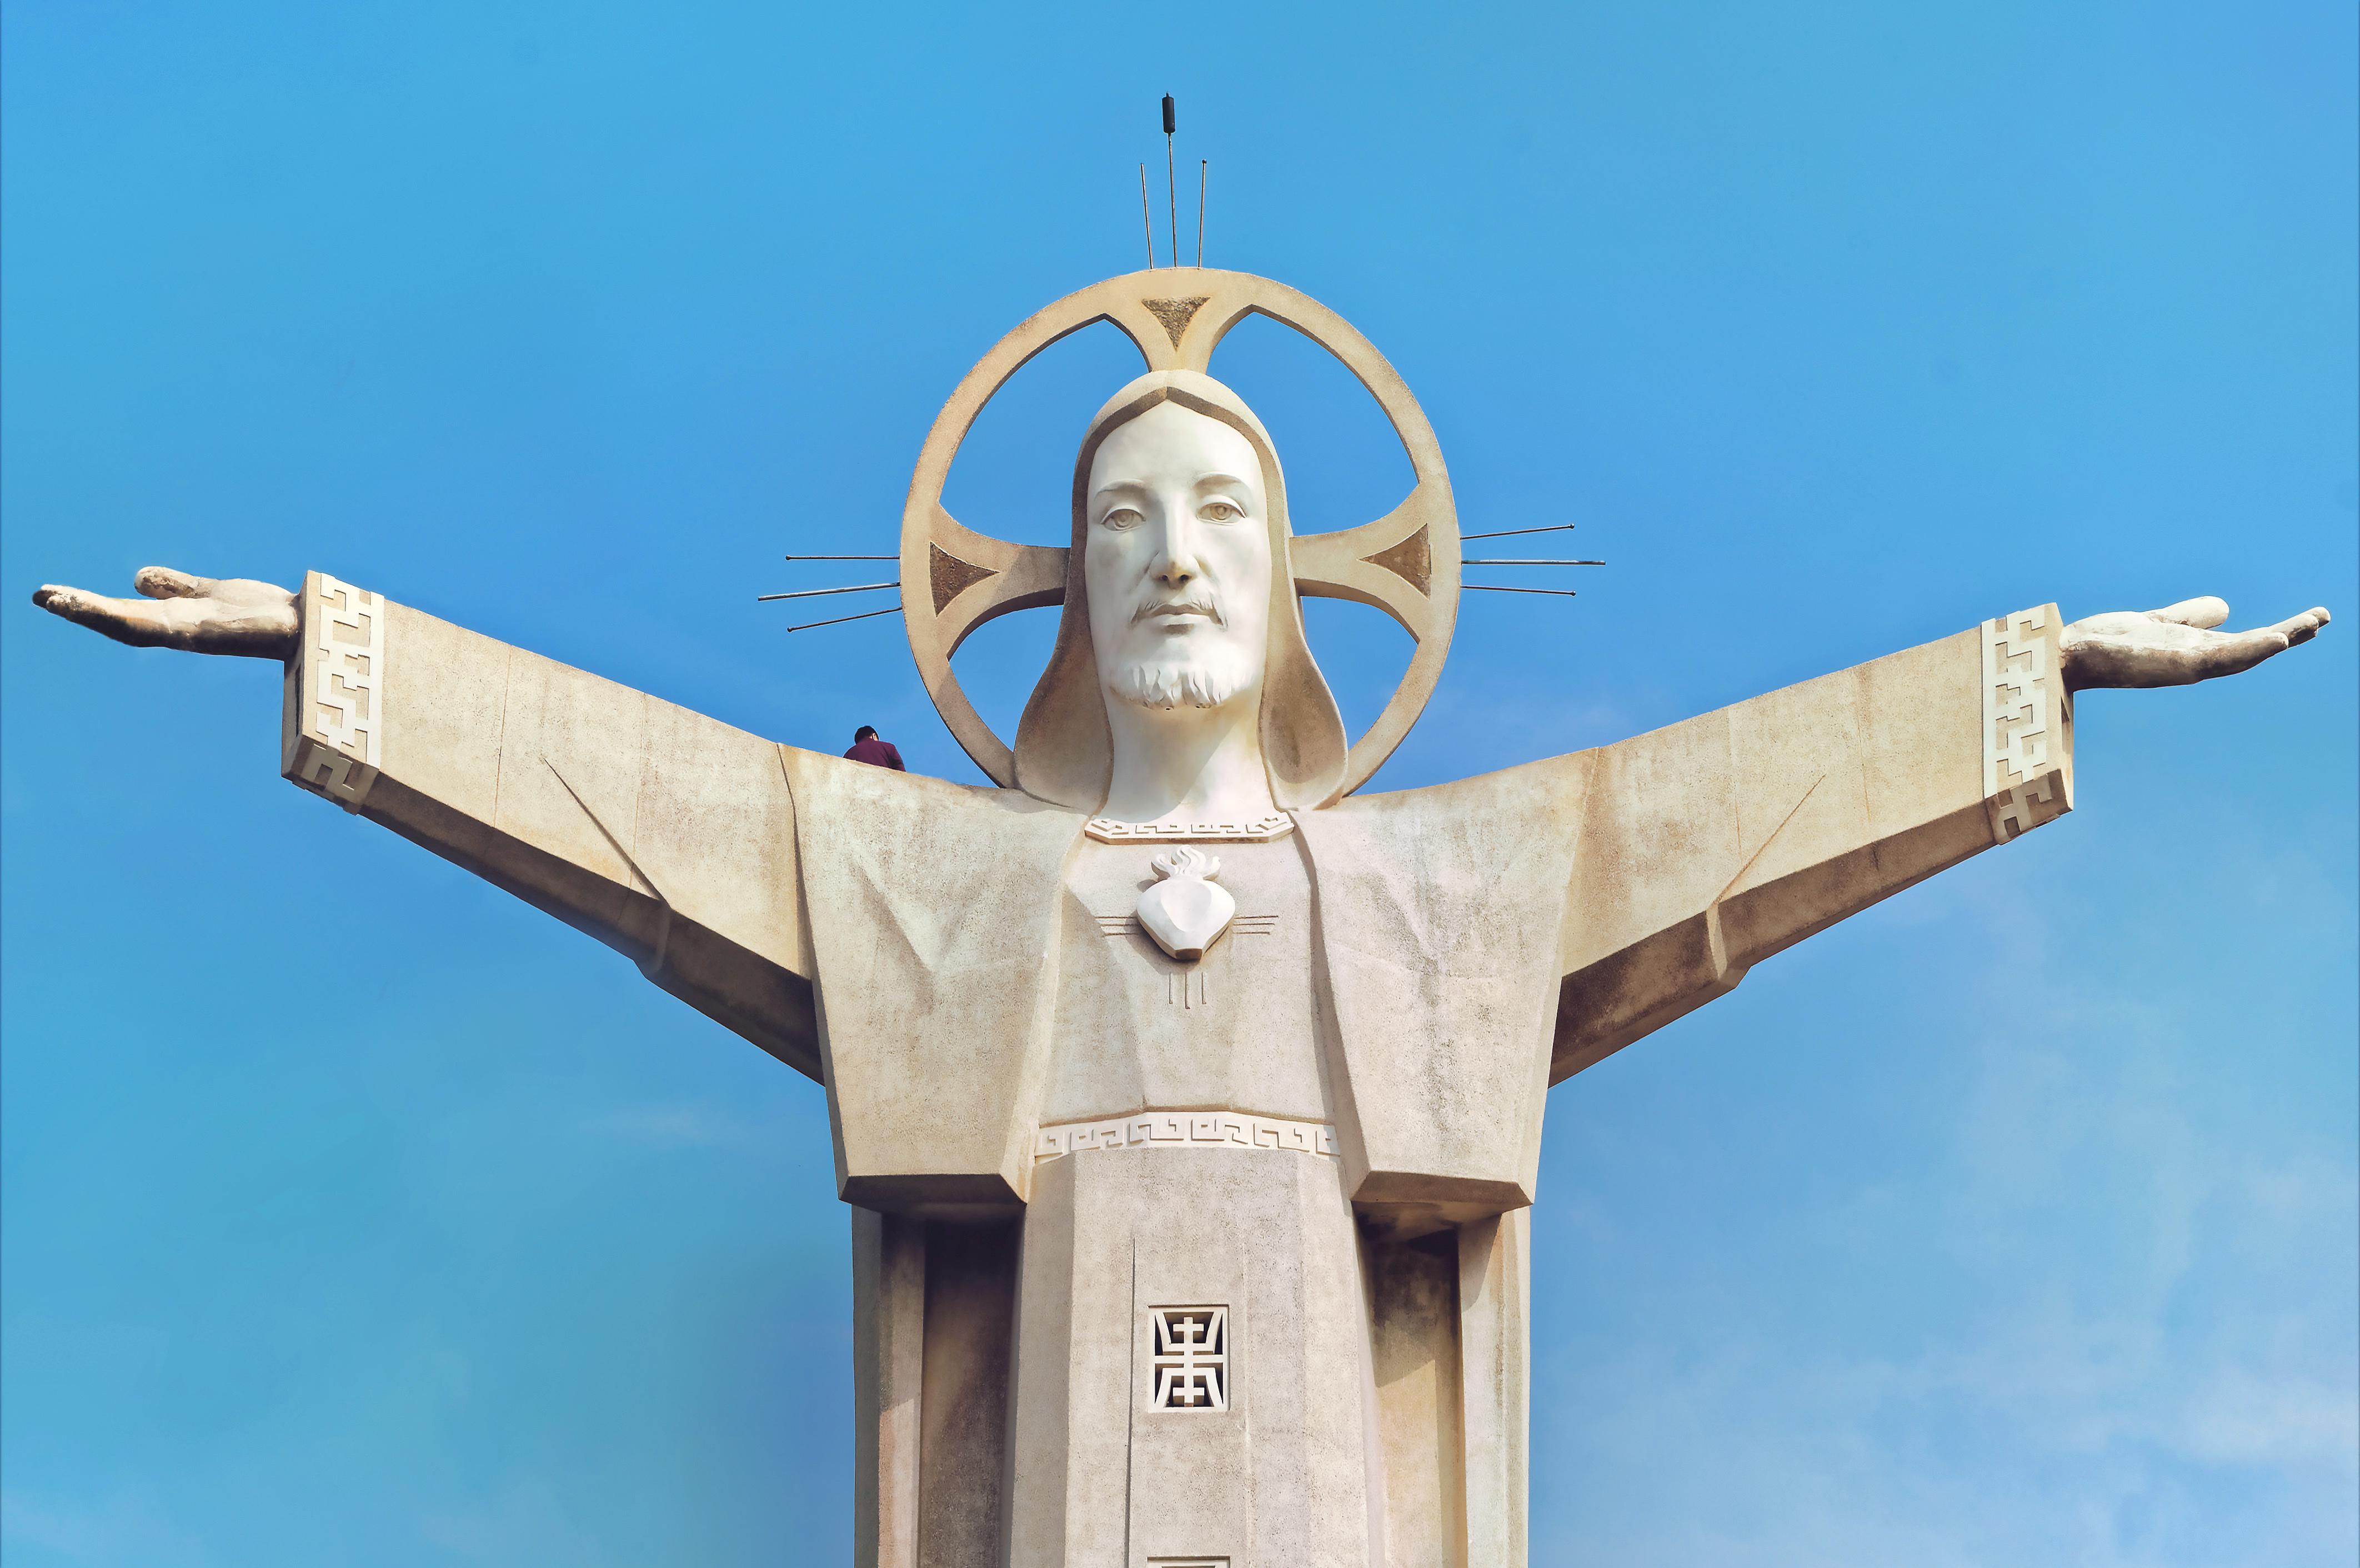 Tòa tháp Chúa Giêsu tại Rio de Janeiro là một kiệt tác nghệ thuật kiến trúc đầy hoành tráng. Bạn sẽ không thể rời mắt khỏi hình ảnh nghệ thuật này khi chiêm ngưỡng nó!